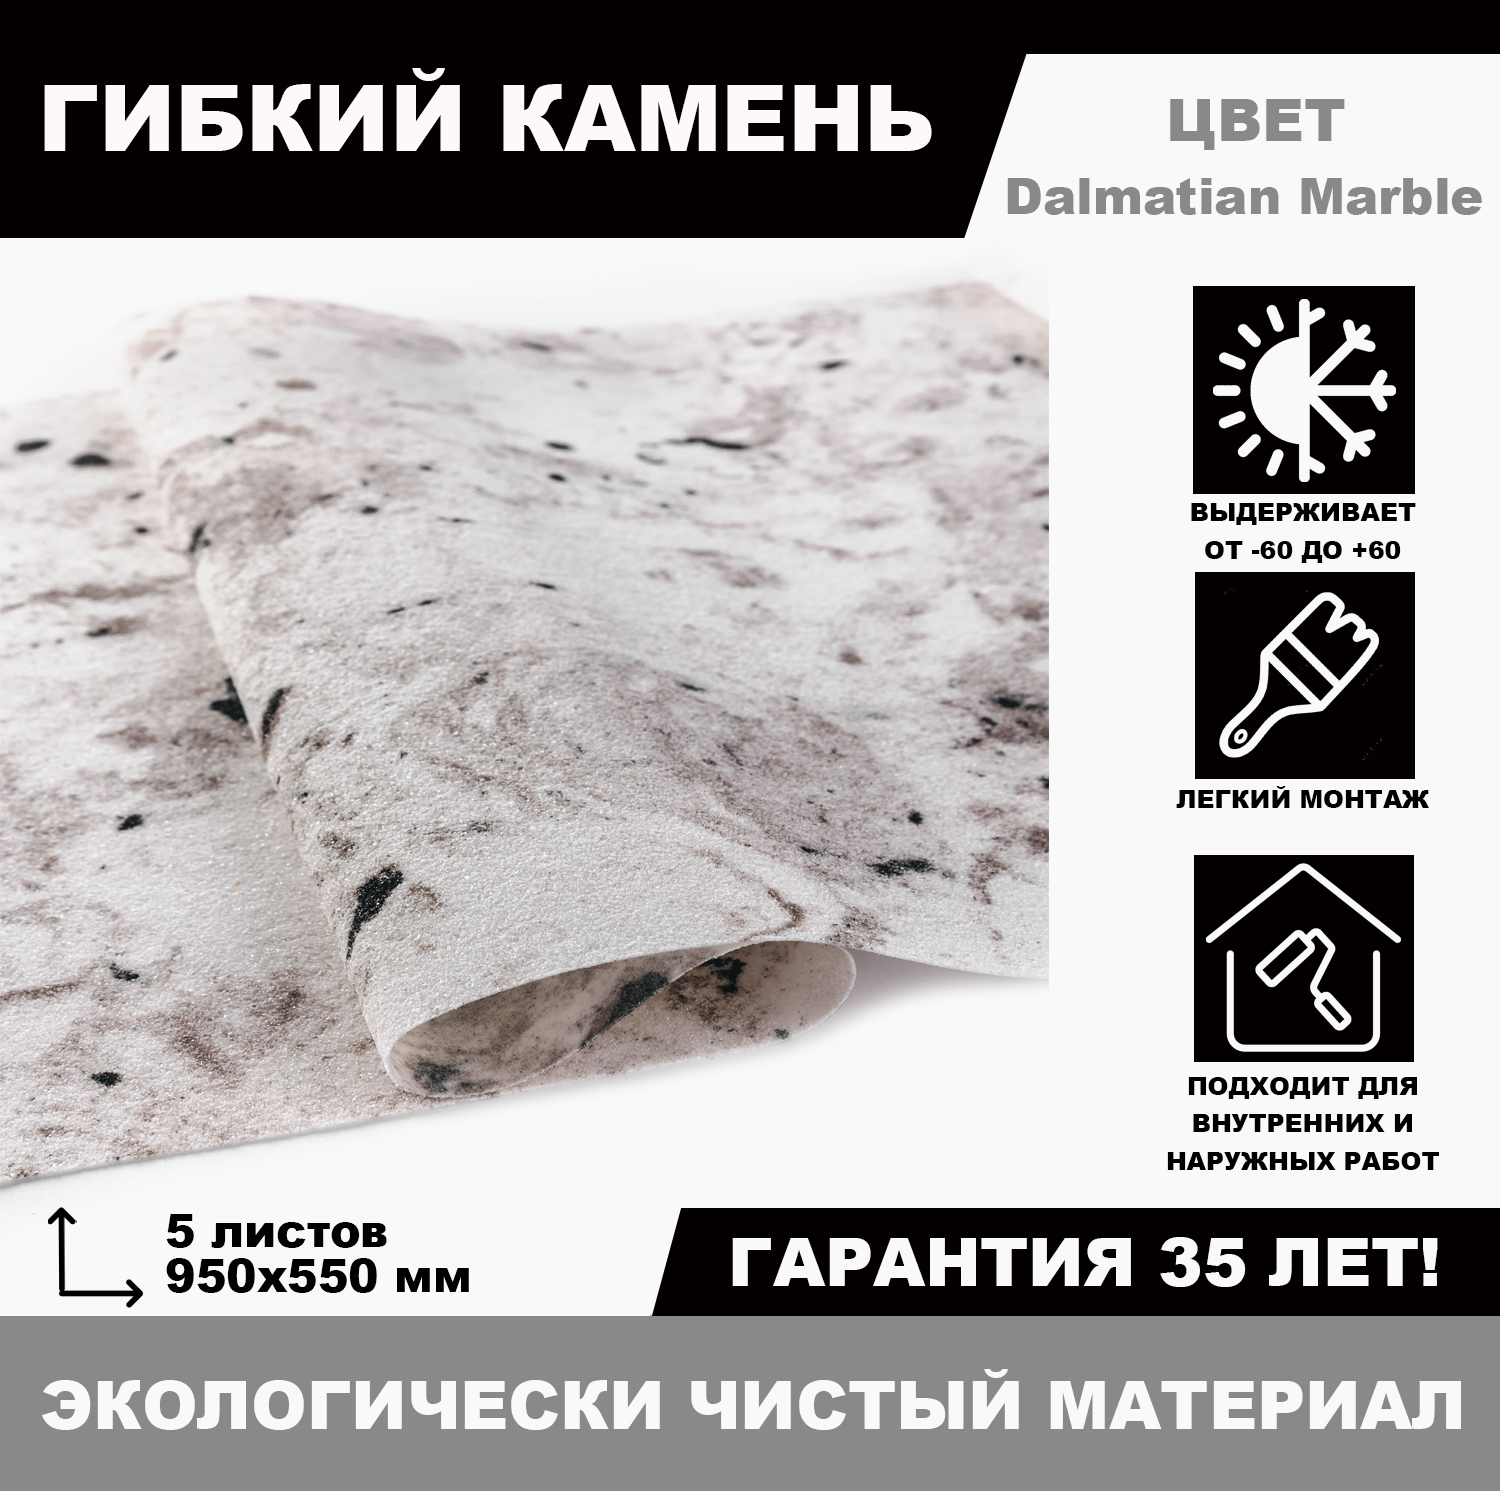 Гибкий камень Dalmatian Marble, 5 листов гибкий скребок для удаления силикона акрила клея и старой краски milwaukee